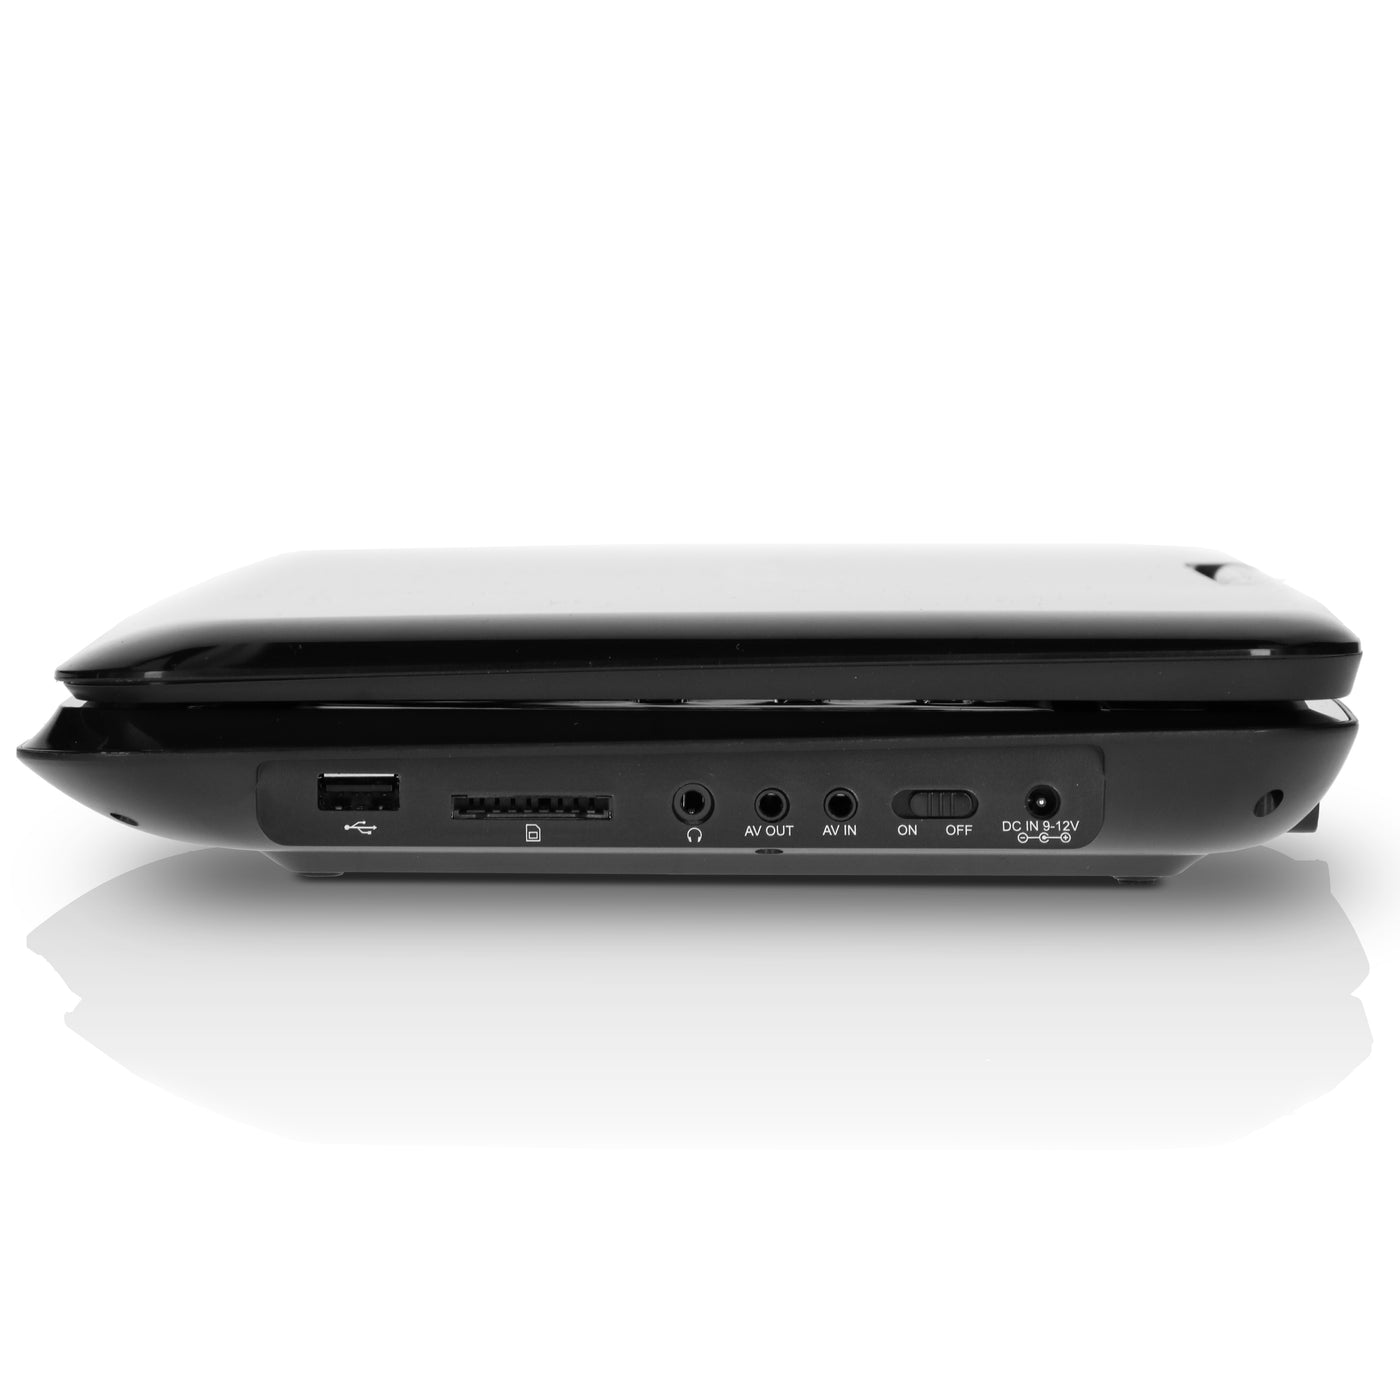 LENCO DVP-1273 - 12" portable DVD-speler met DVB-T2 ontvanger - Zwart